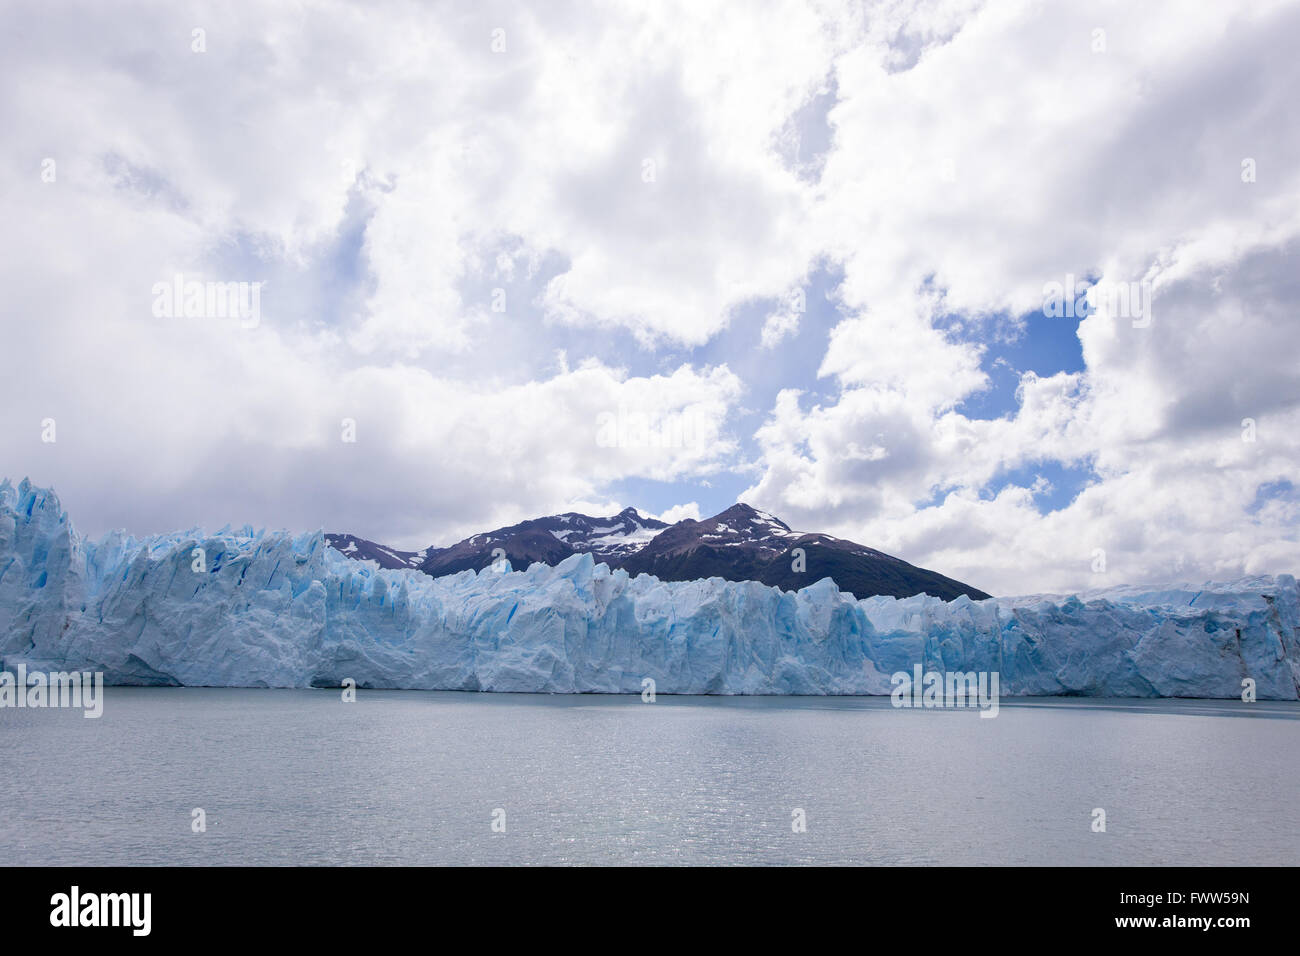 Perito Moreno glacier, Patagonia, Argentina. Stock Photo